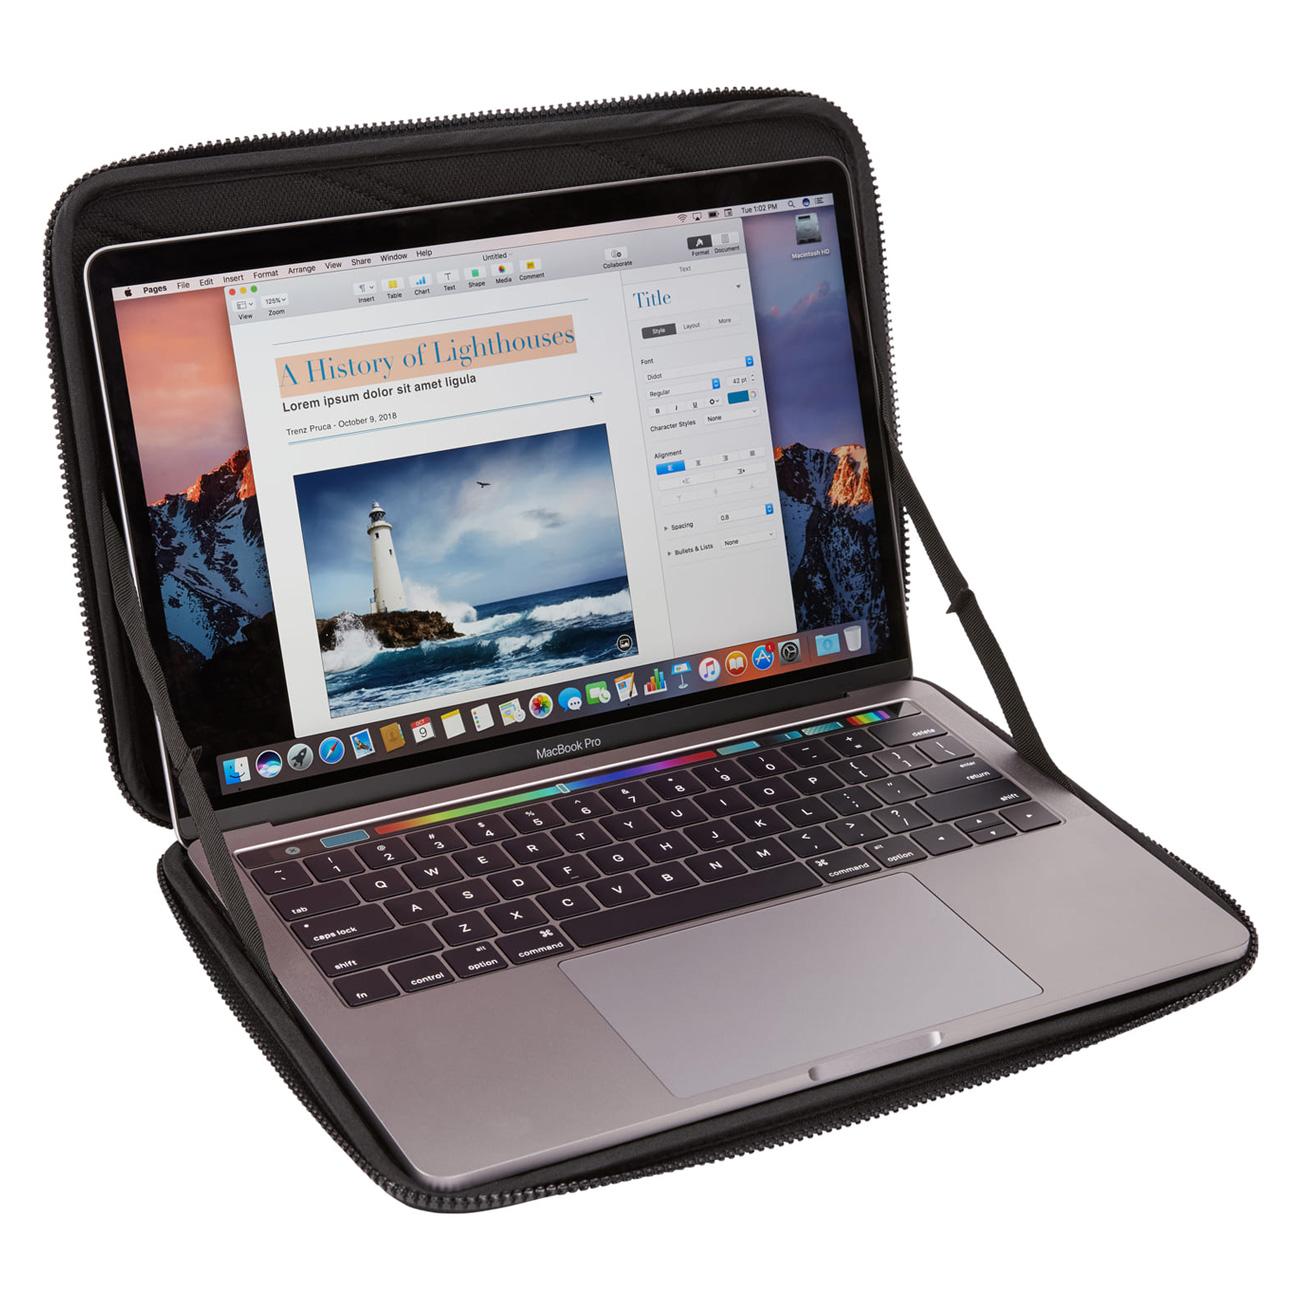 Funda Thule Gauntlet para MacBook® 13"